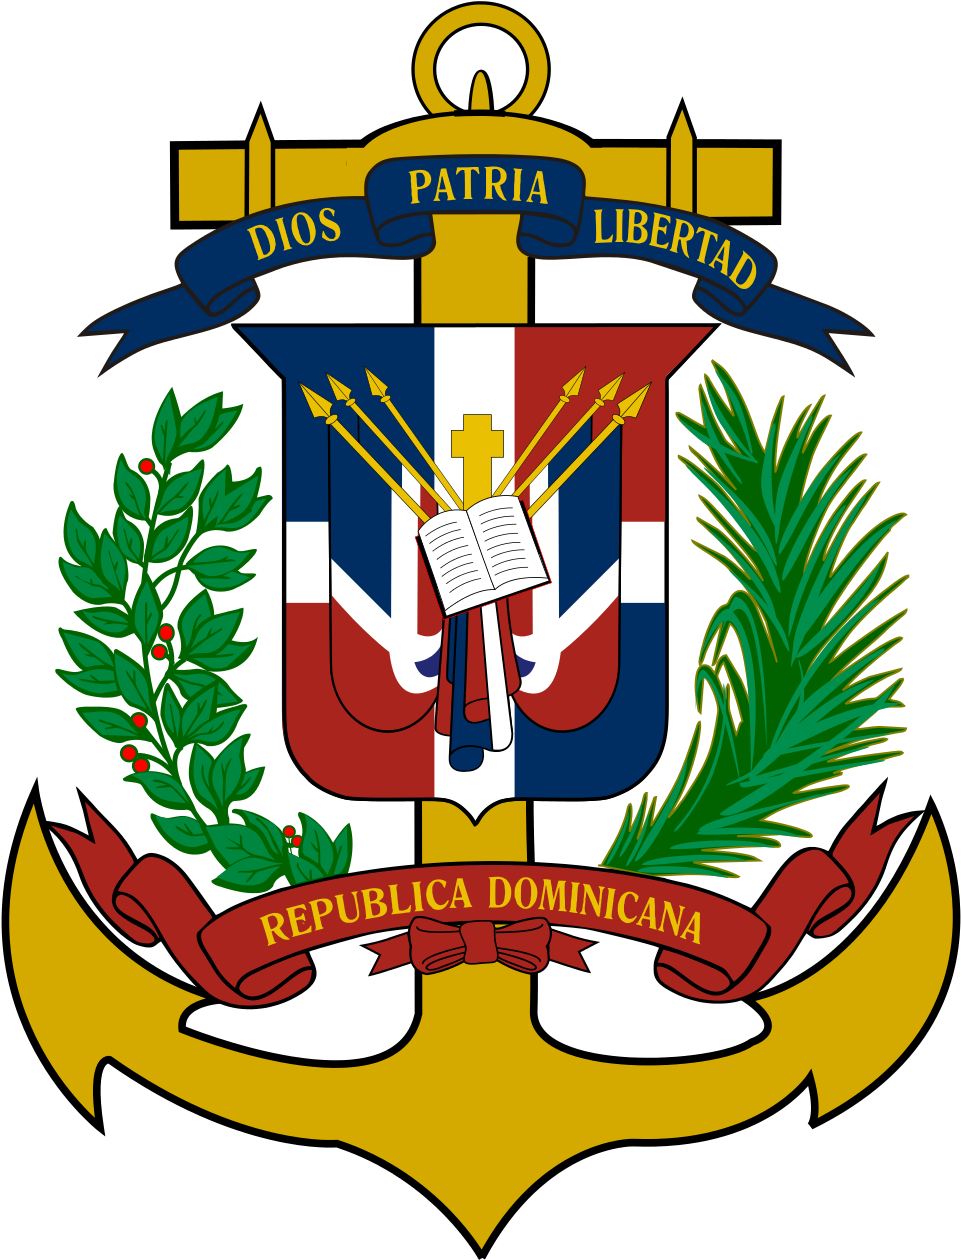 Dominican Republic (1200x1553)